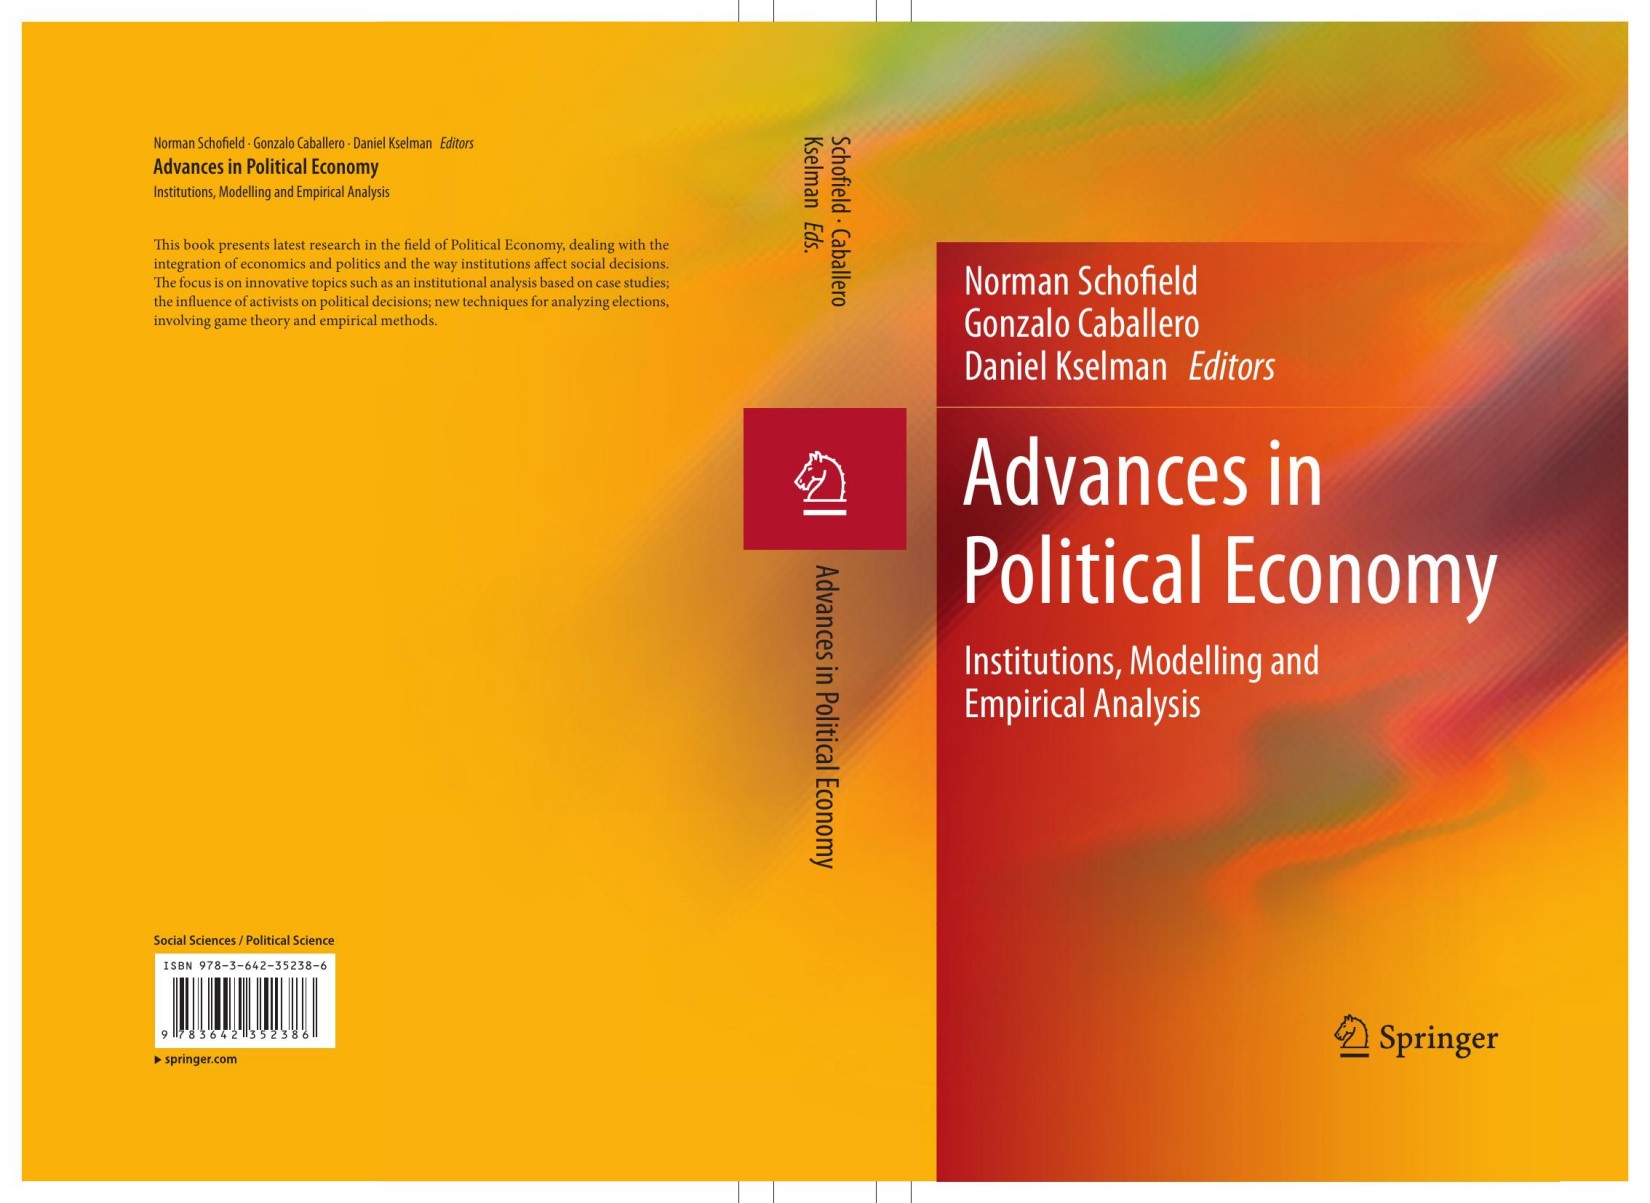 Advances in Political Economy